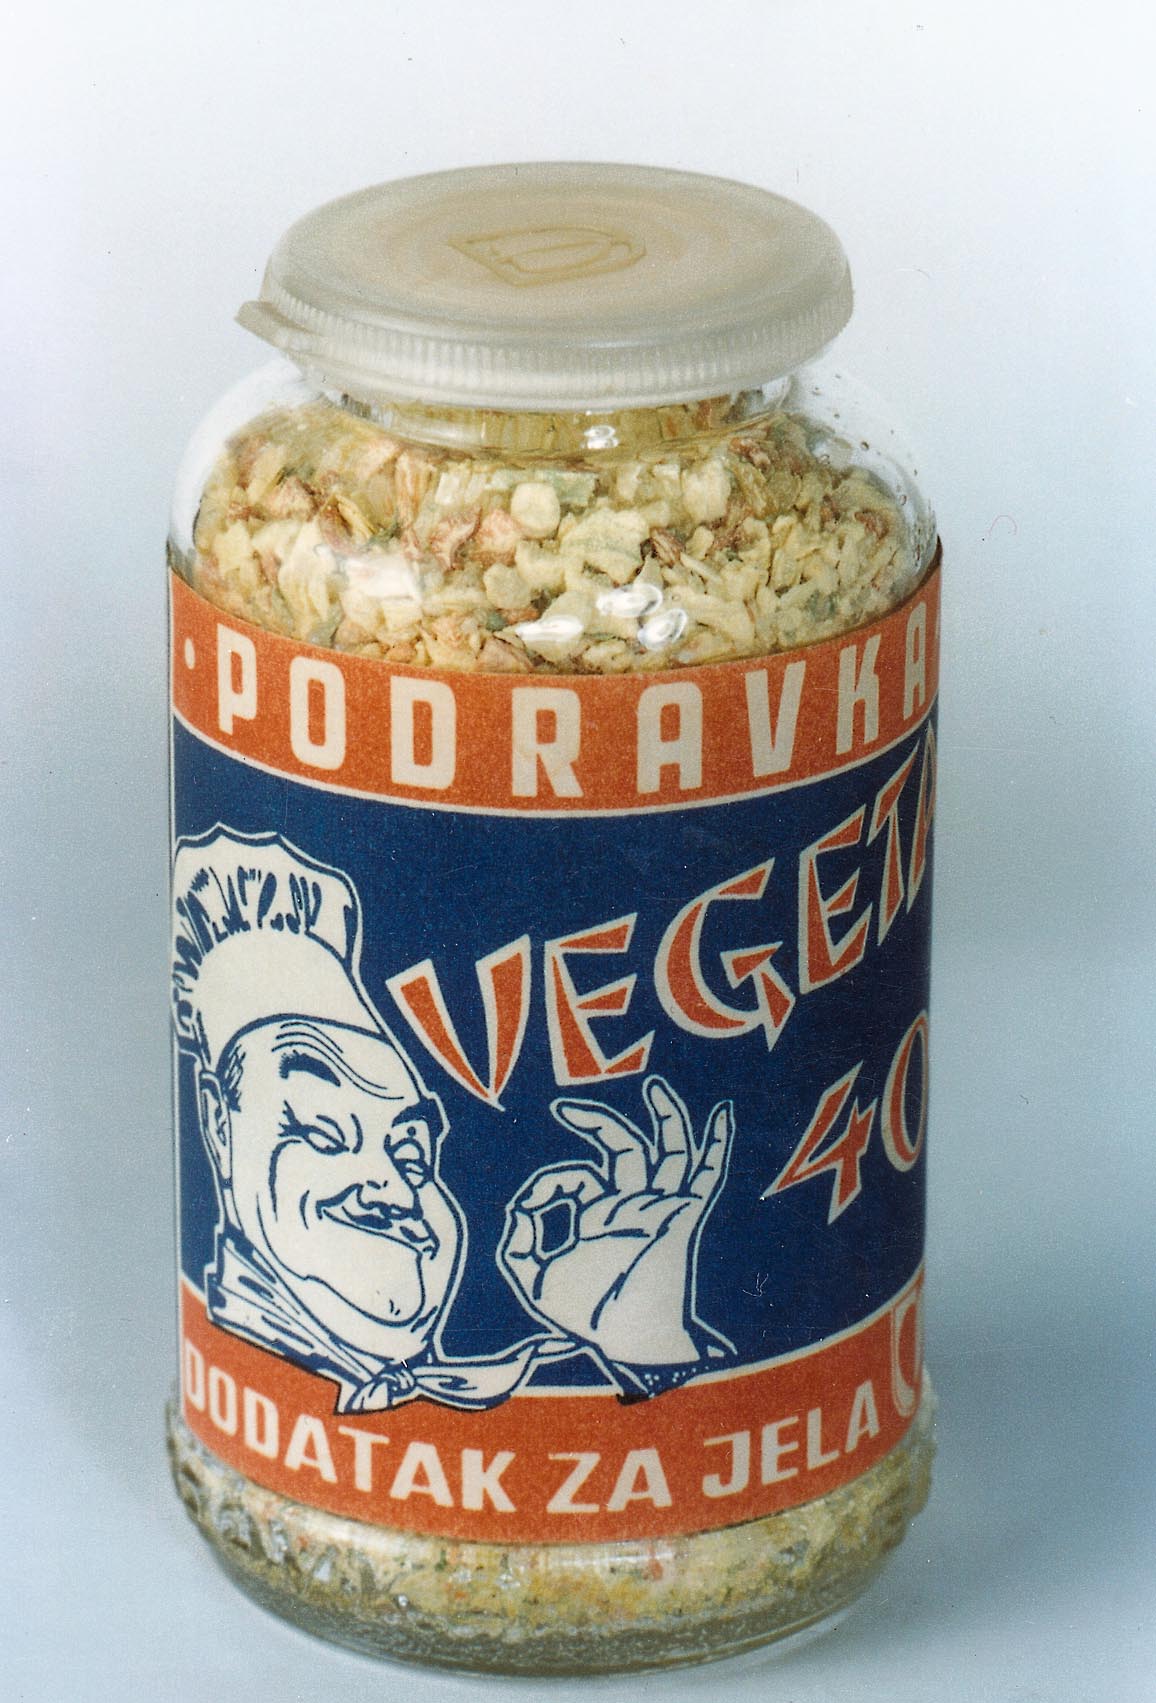 Vegeta - the best-selling dehydrated food seasoning in Europe 